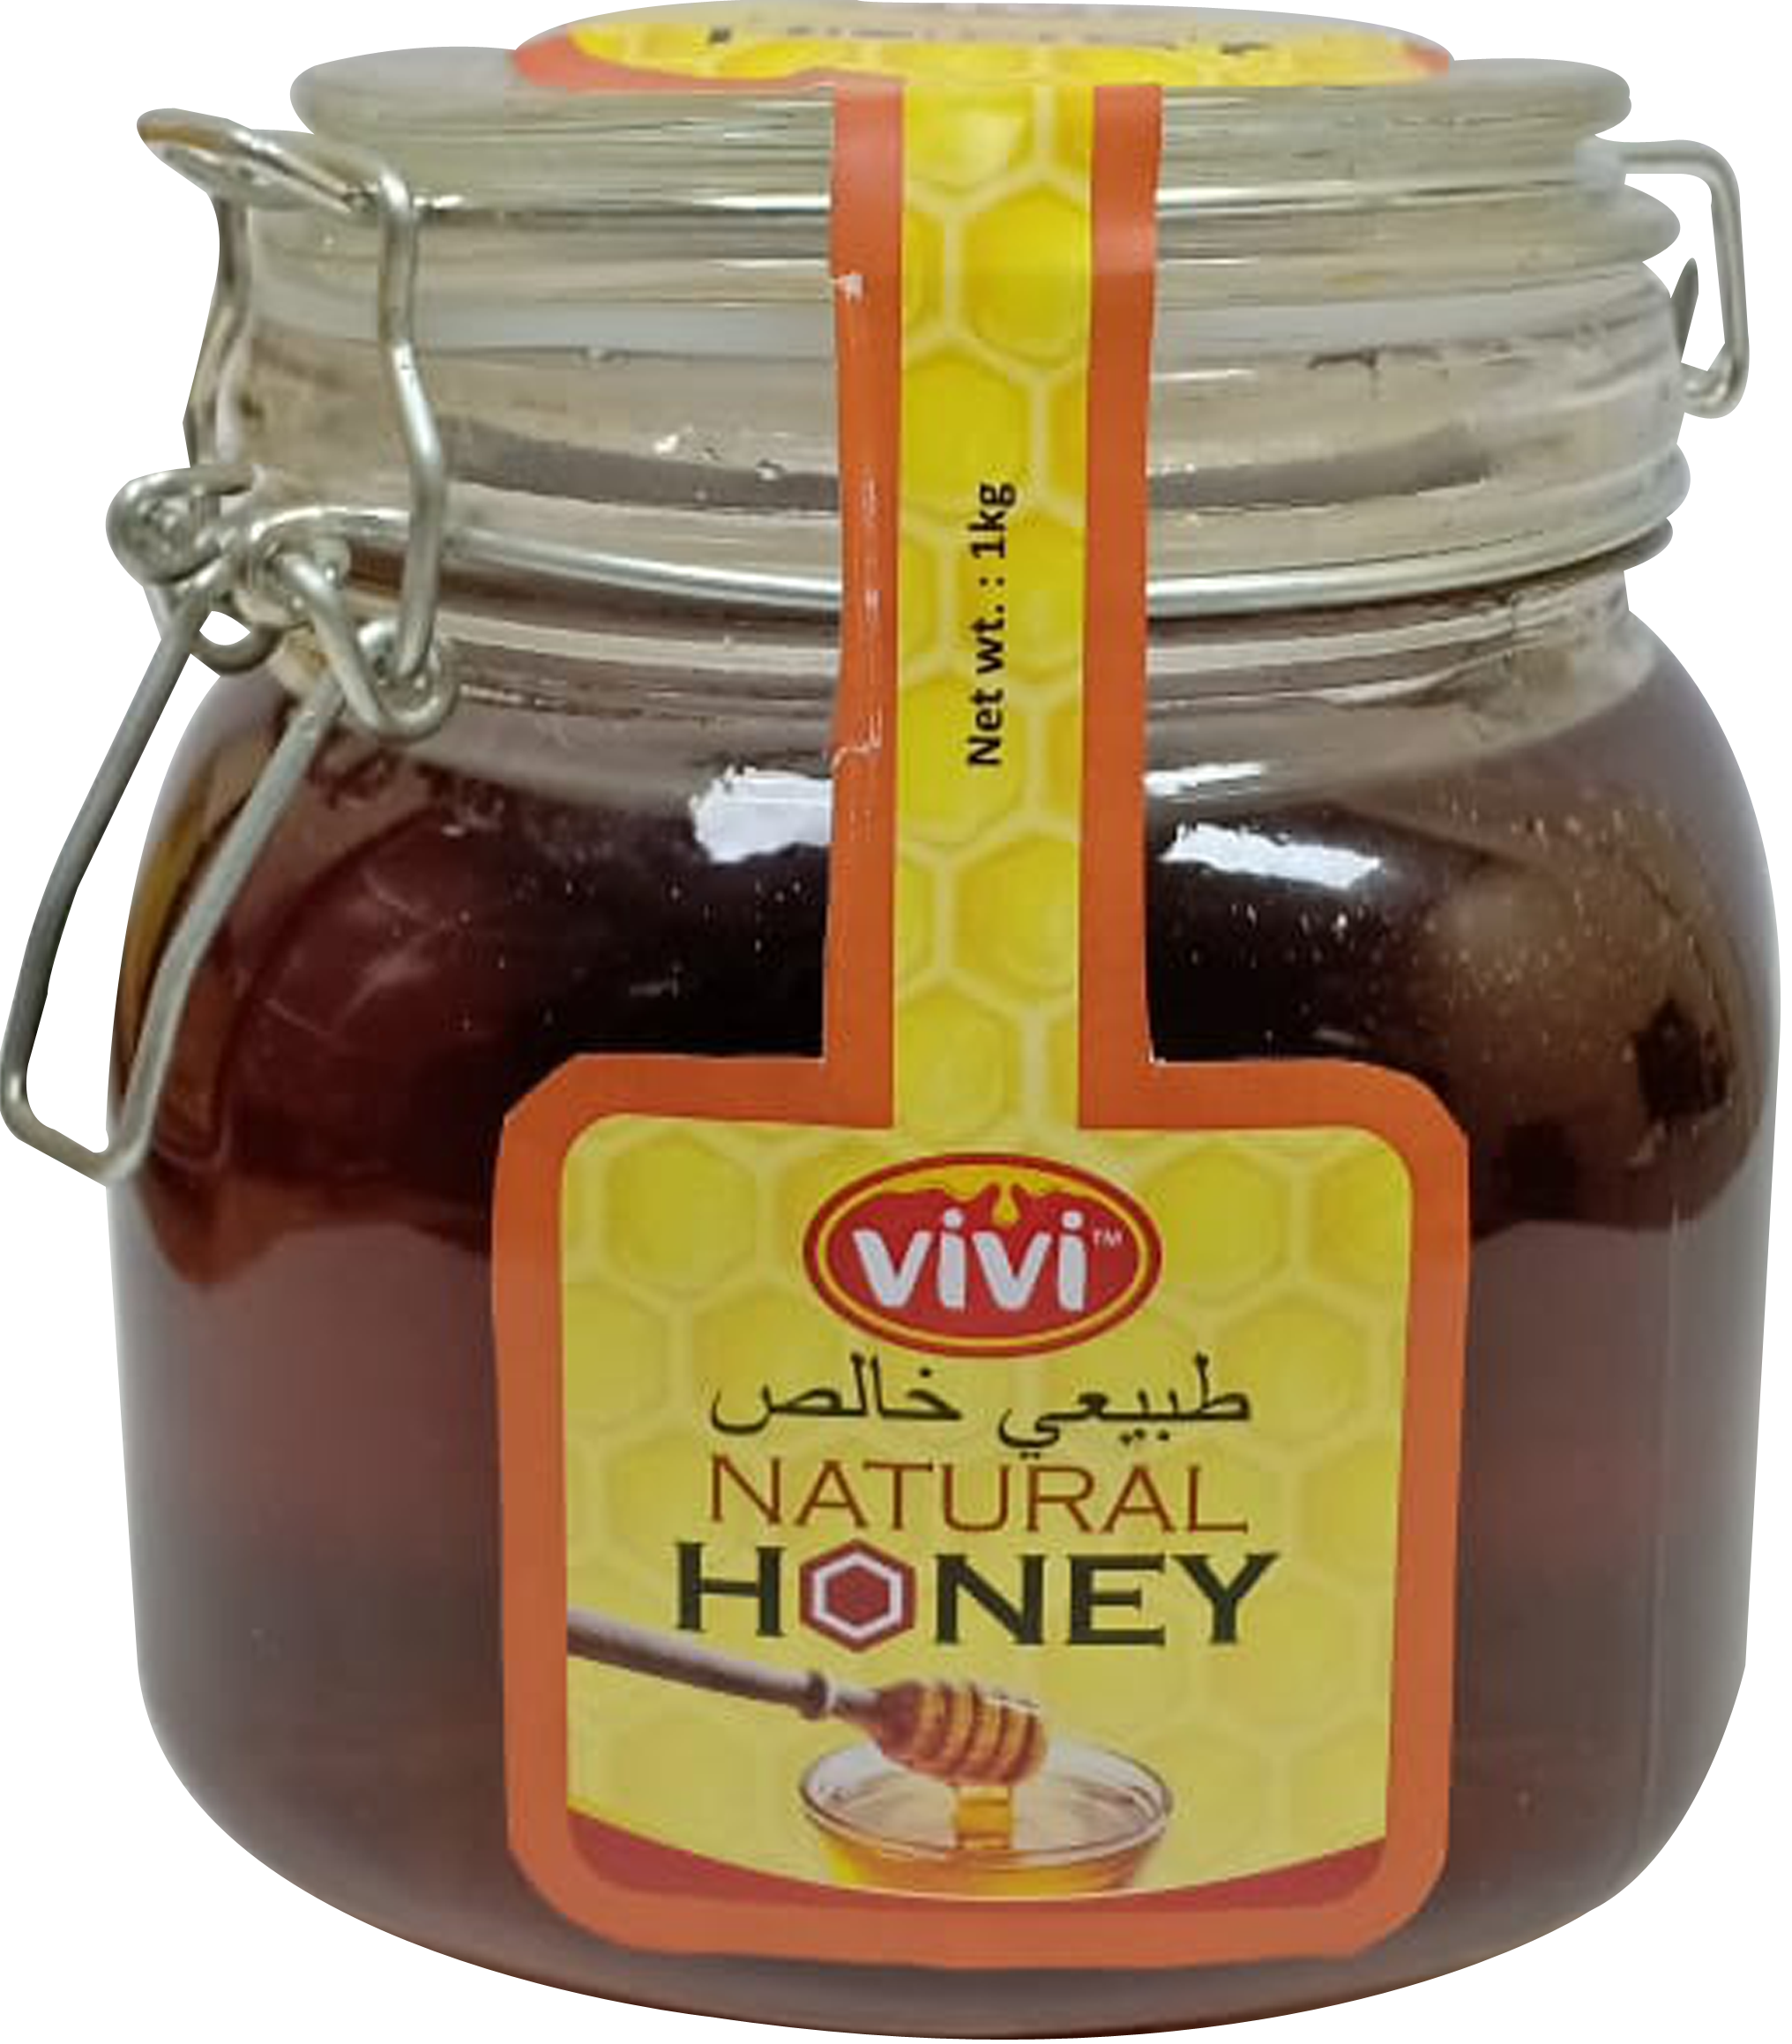 VIVI Natural Honey- clip jar